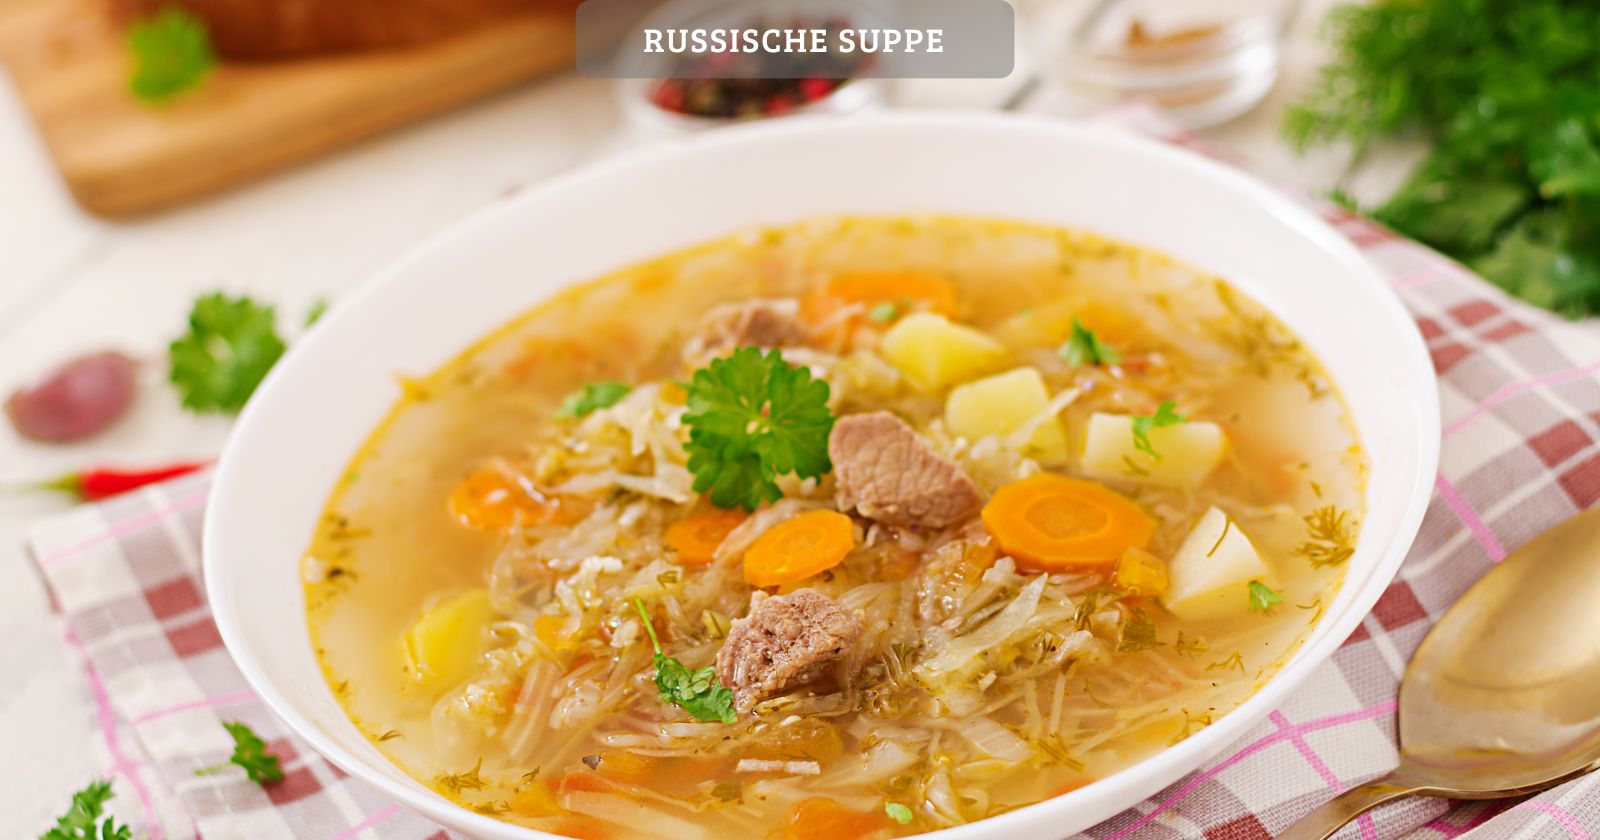 Russische suppe